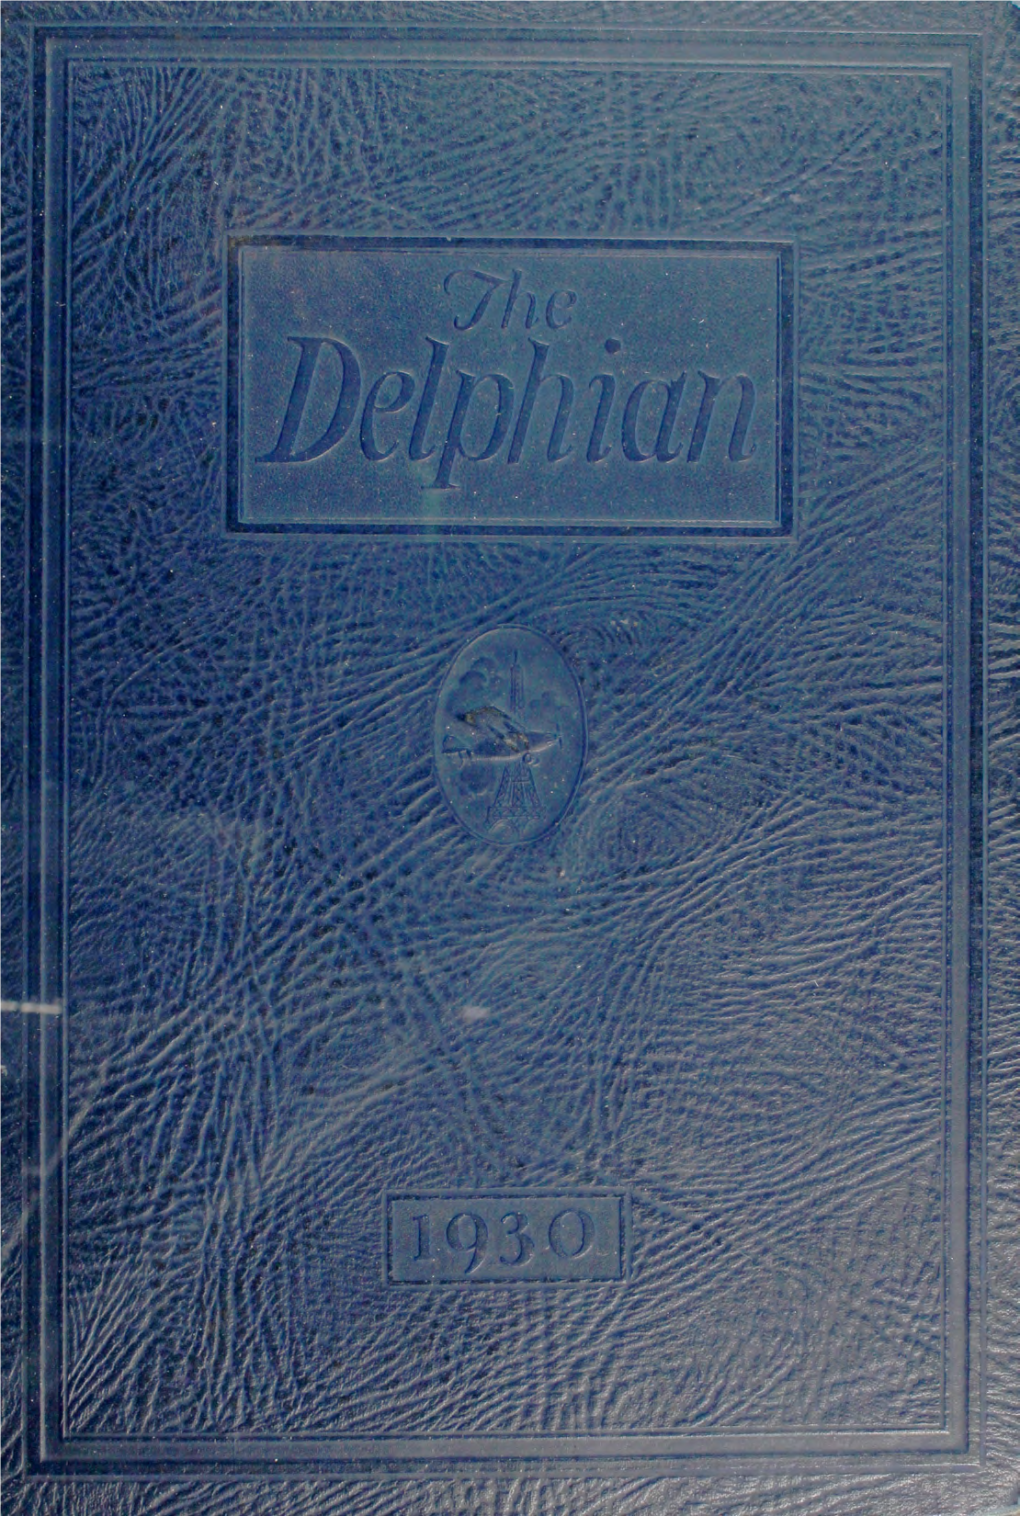 Delphian1930.Pdf